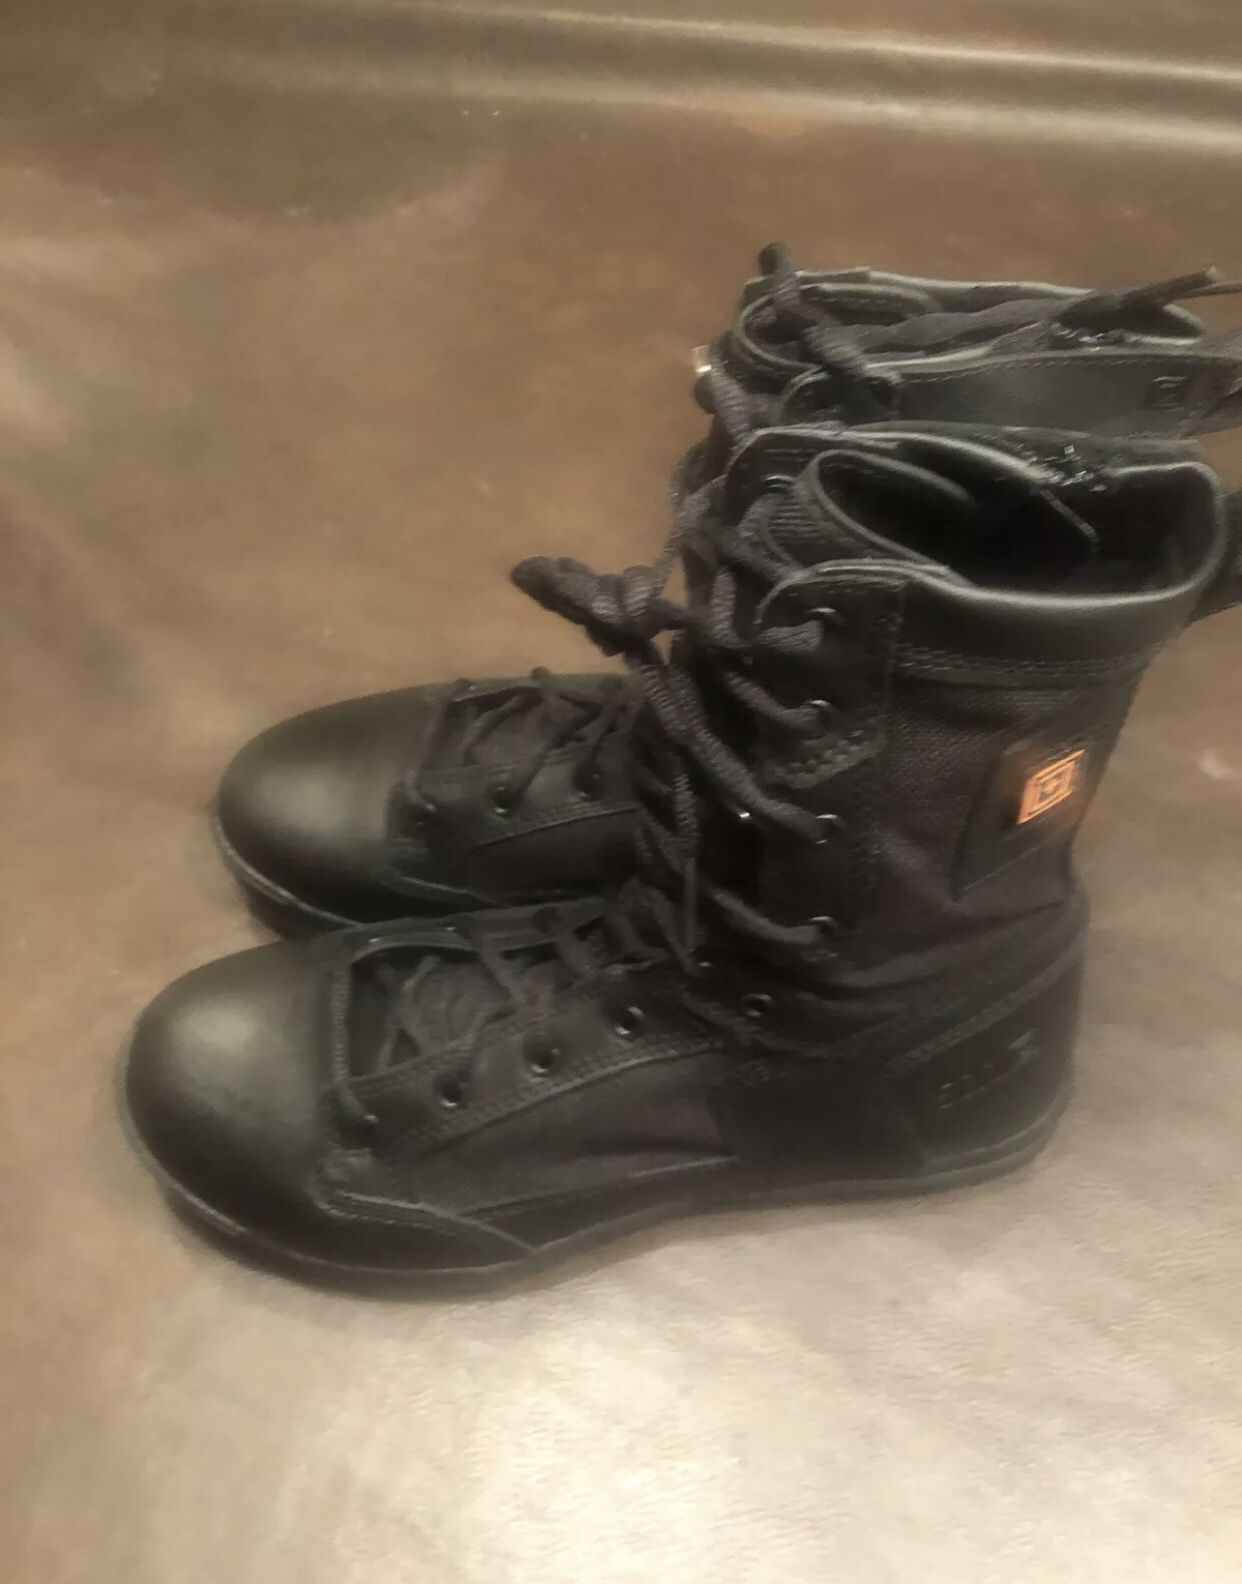 Tactical man boots